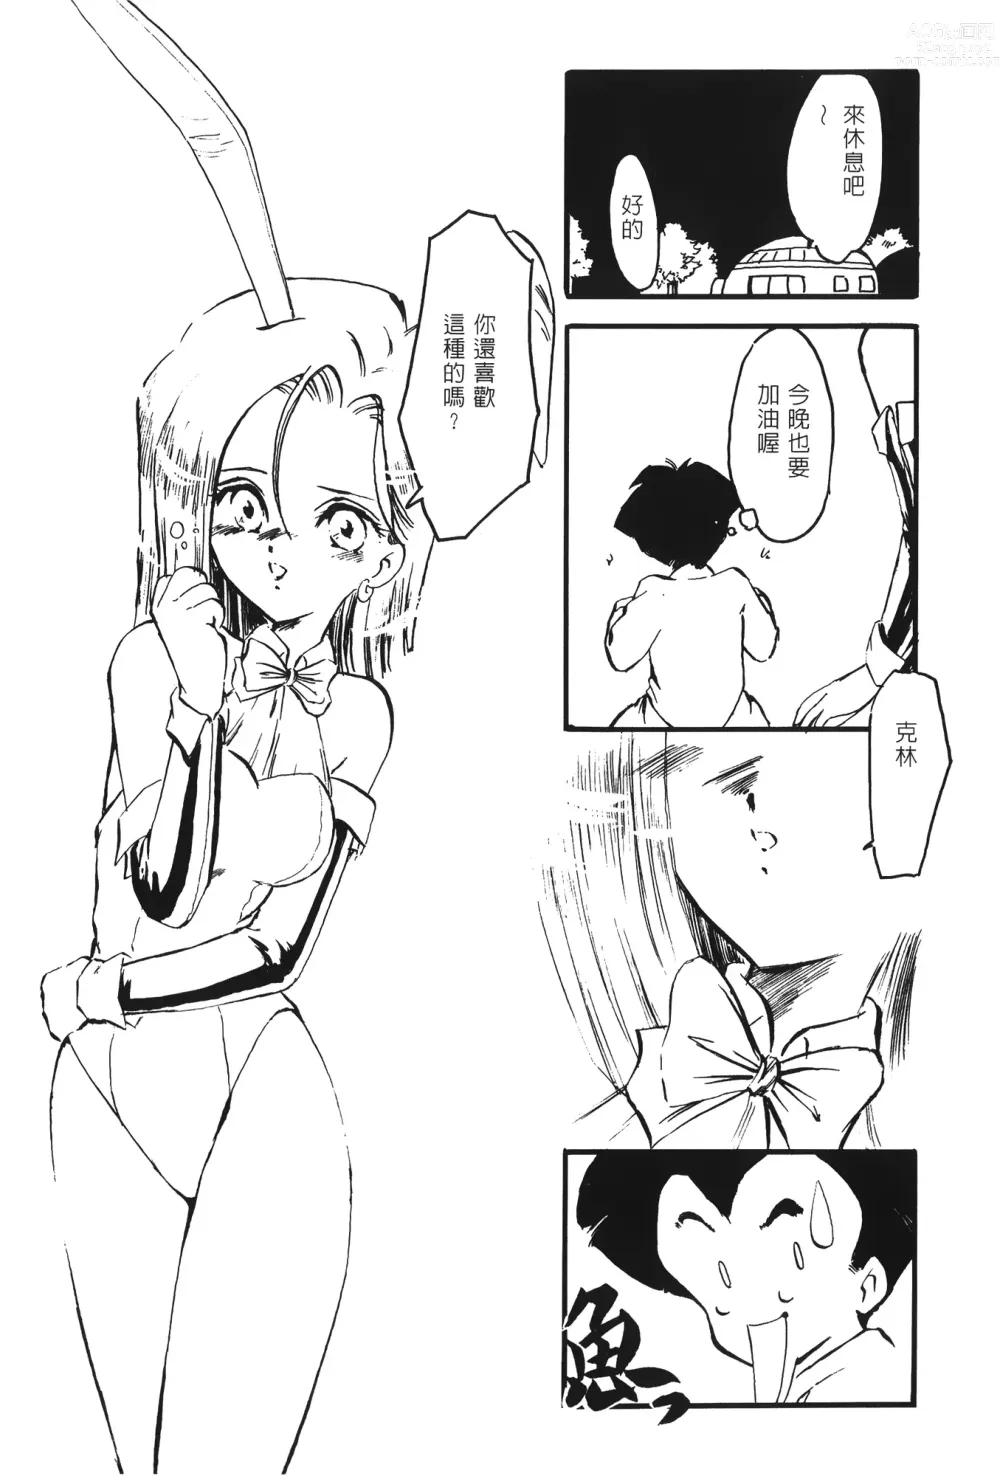 Page 141 of doujinshi ドラゴンパール 02